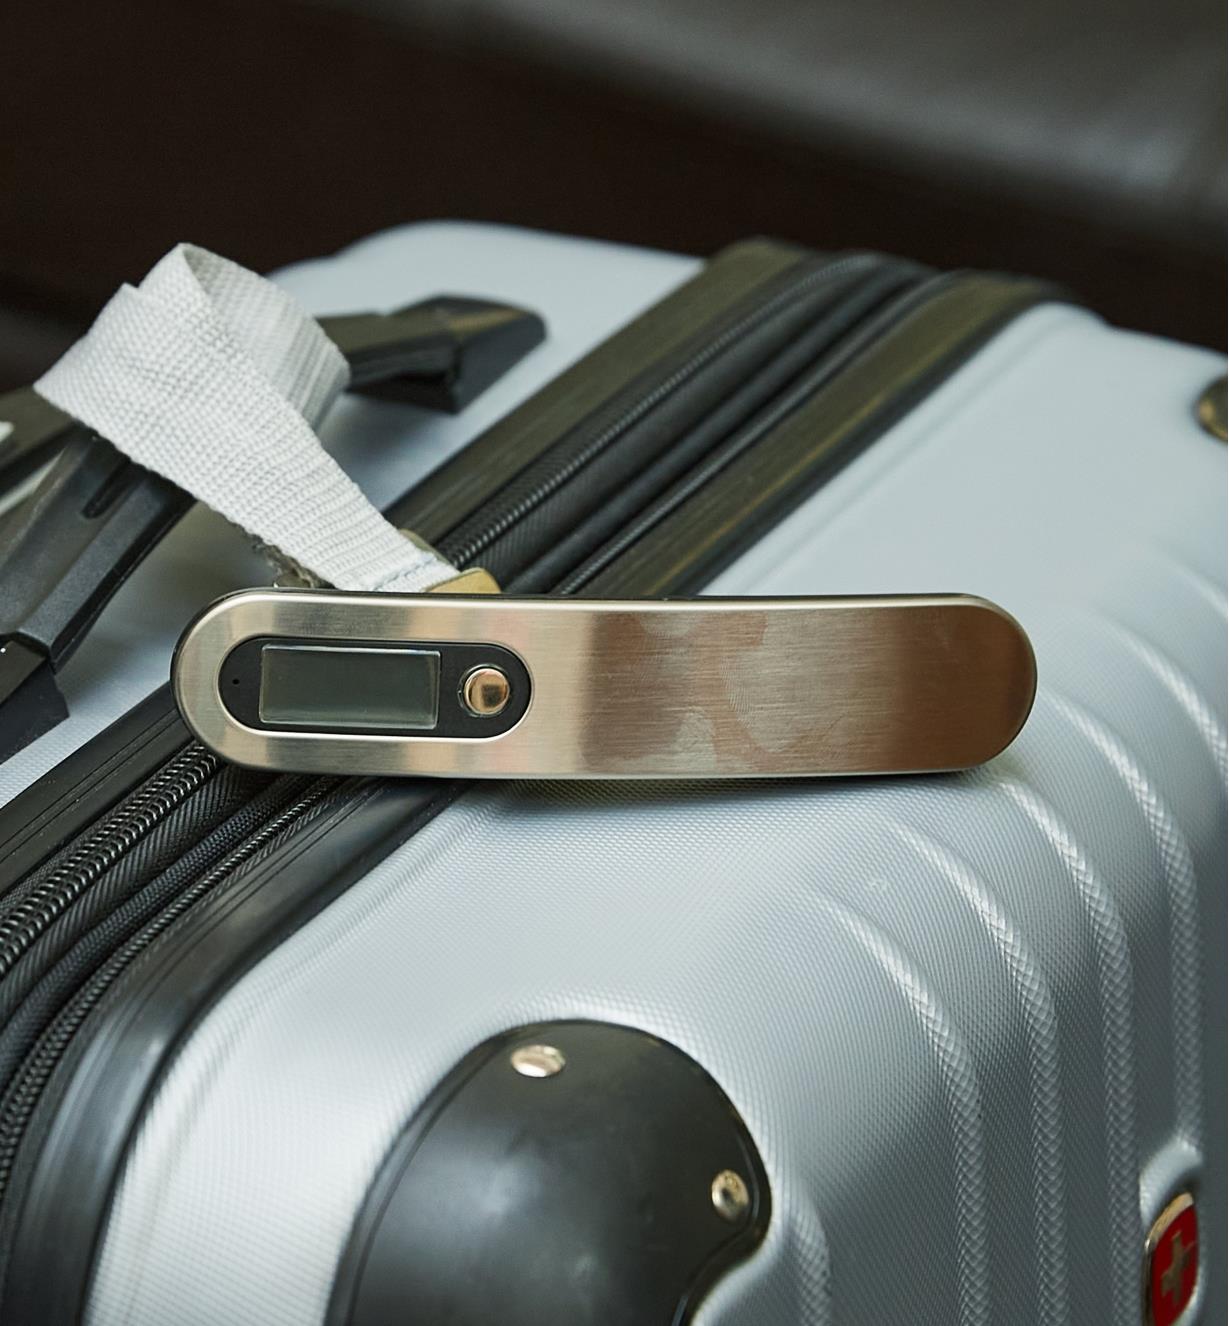 Pèse-bagage numérique déposé sur un bagage